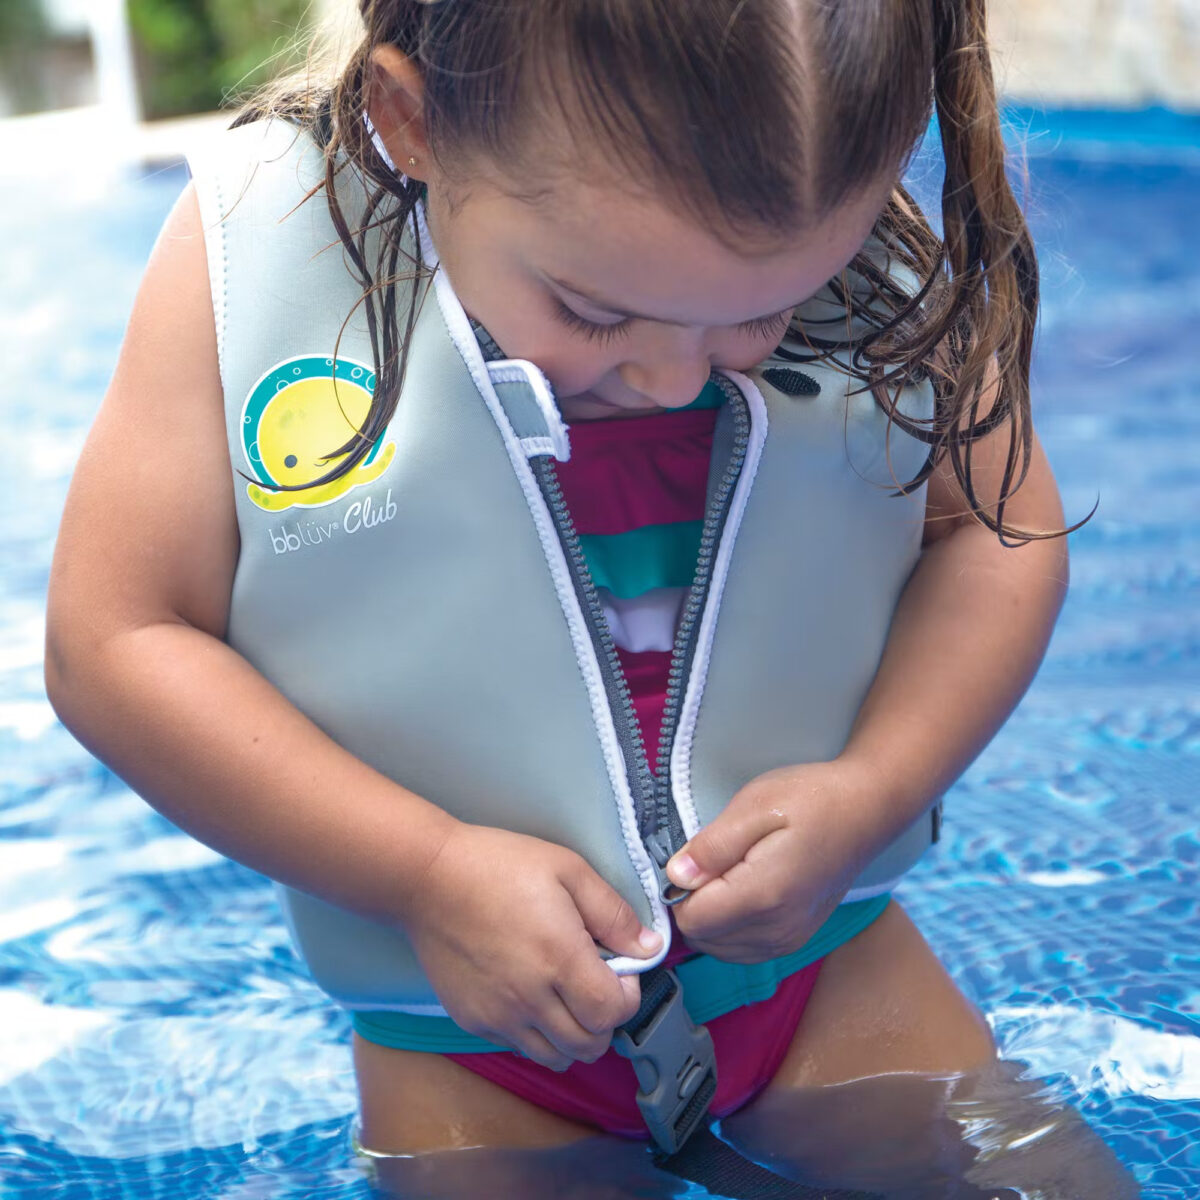 BBLUV Näj SPF50 eemaldatavate toetusplaatidega ujumisvest lastele toon GREY, suurus MEDIUM ehk 3-6 aastat Ujumisriided ja tarvikud - HellyK - Kvaliteetsed lasteriided, villariided, barefoot jalatsid